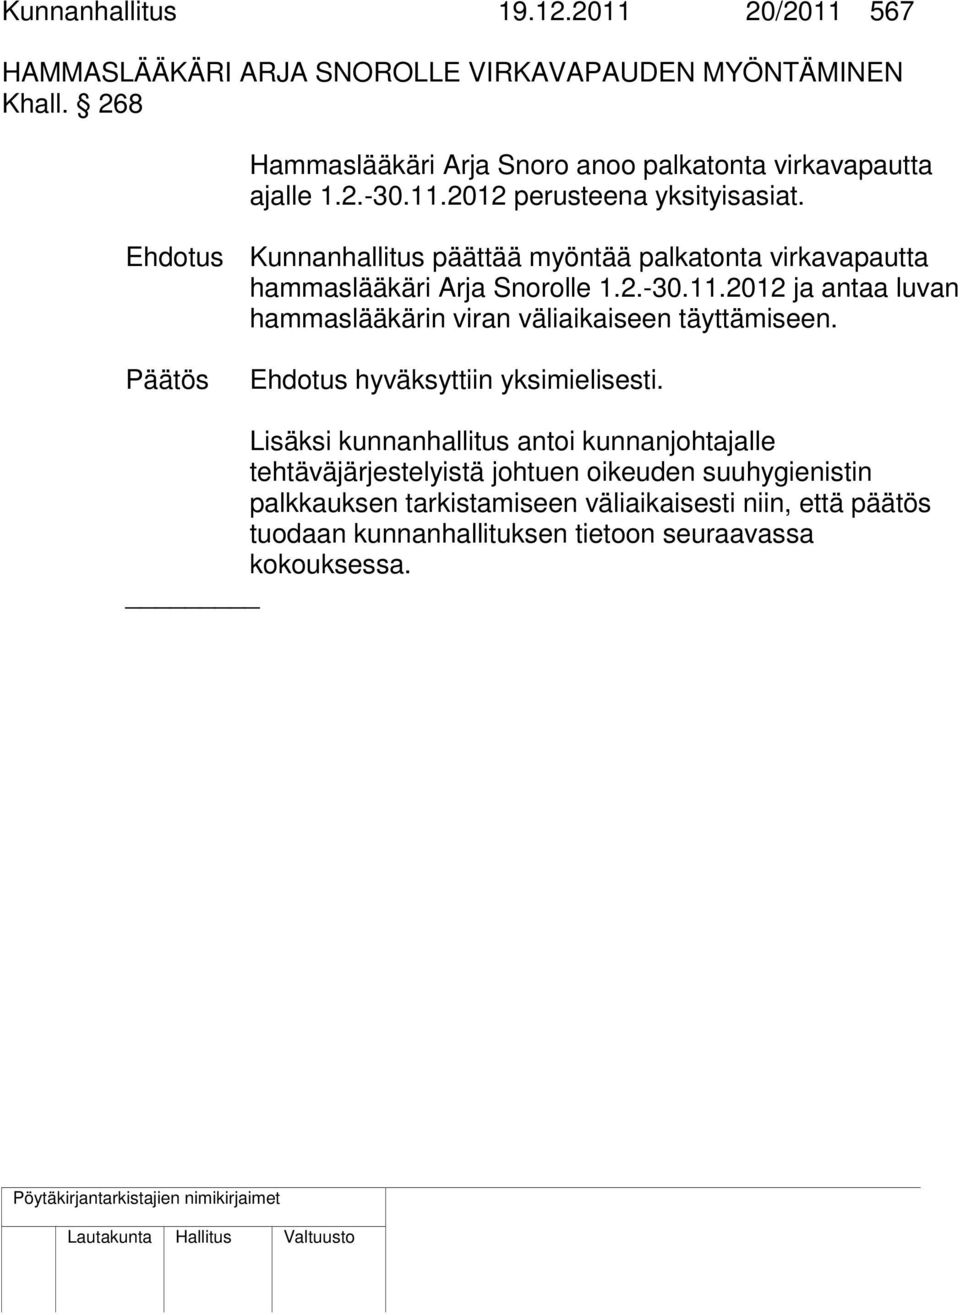 Ehdotus Kunnanhallitus päättää myöntää palkatonta virkavapautta hammaslääkäri Arja Snorolle 1.2.-30.11.